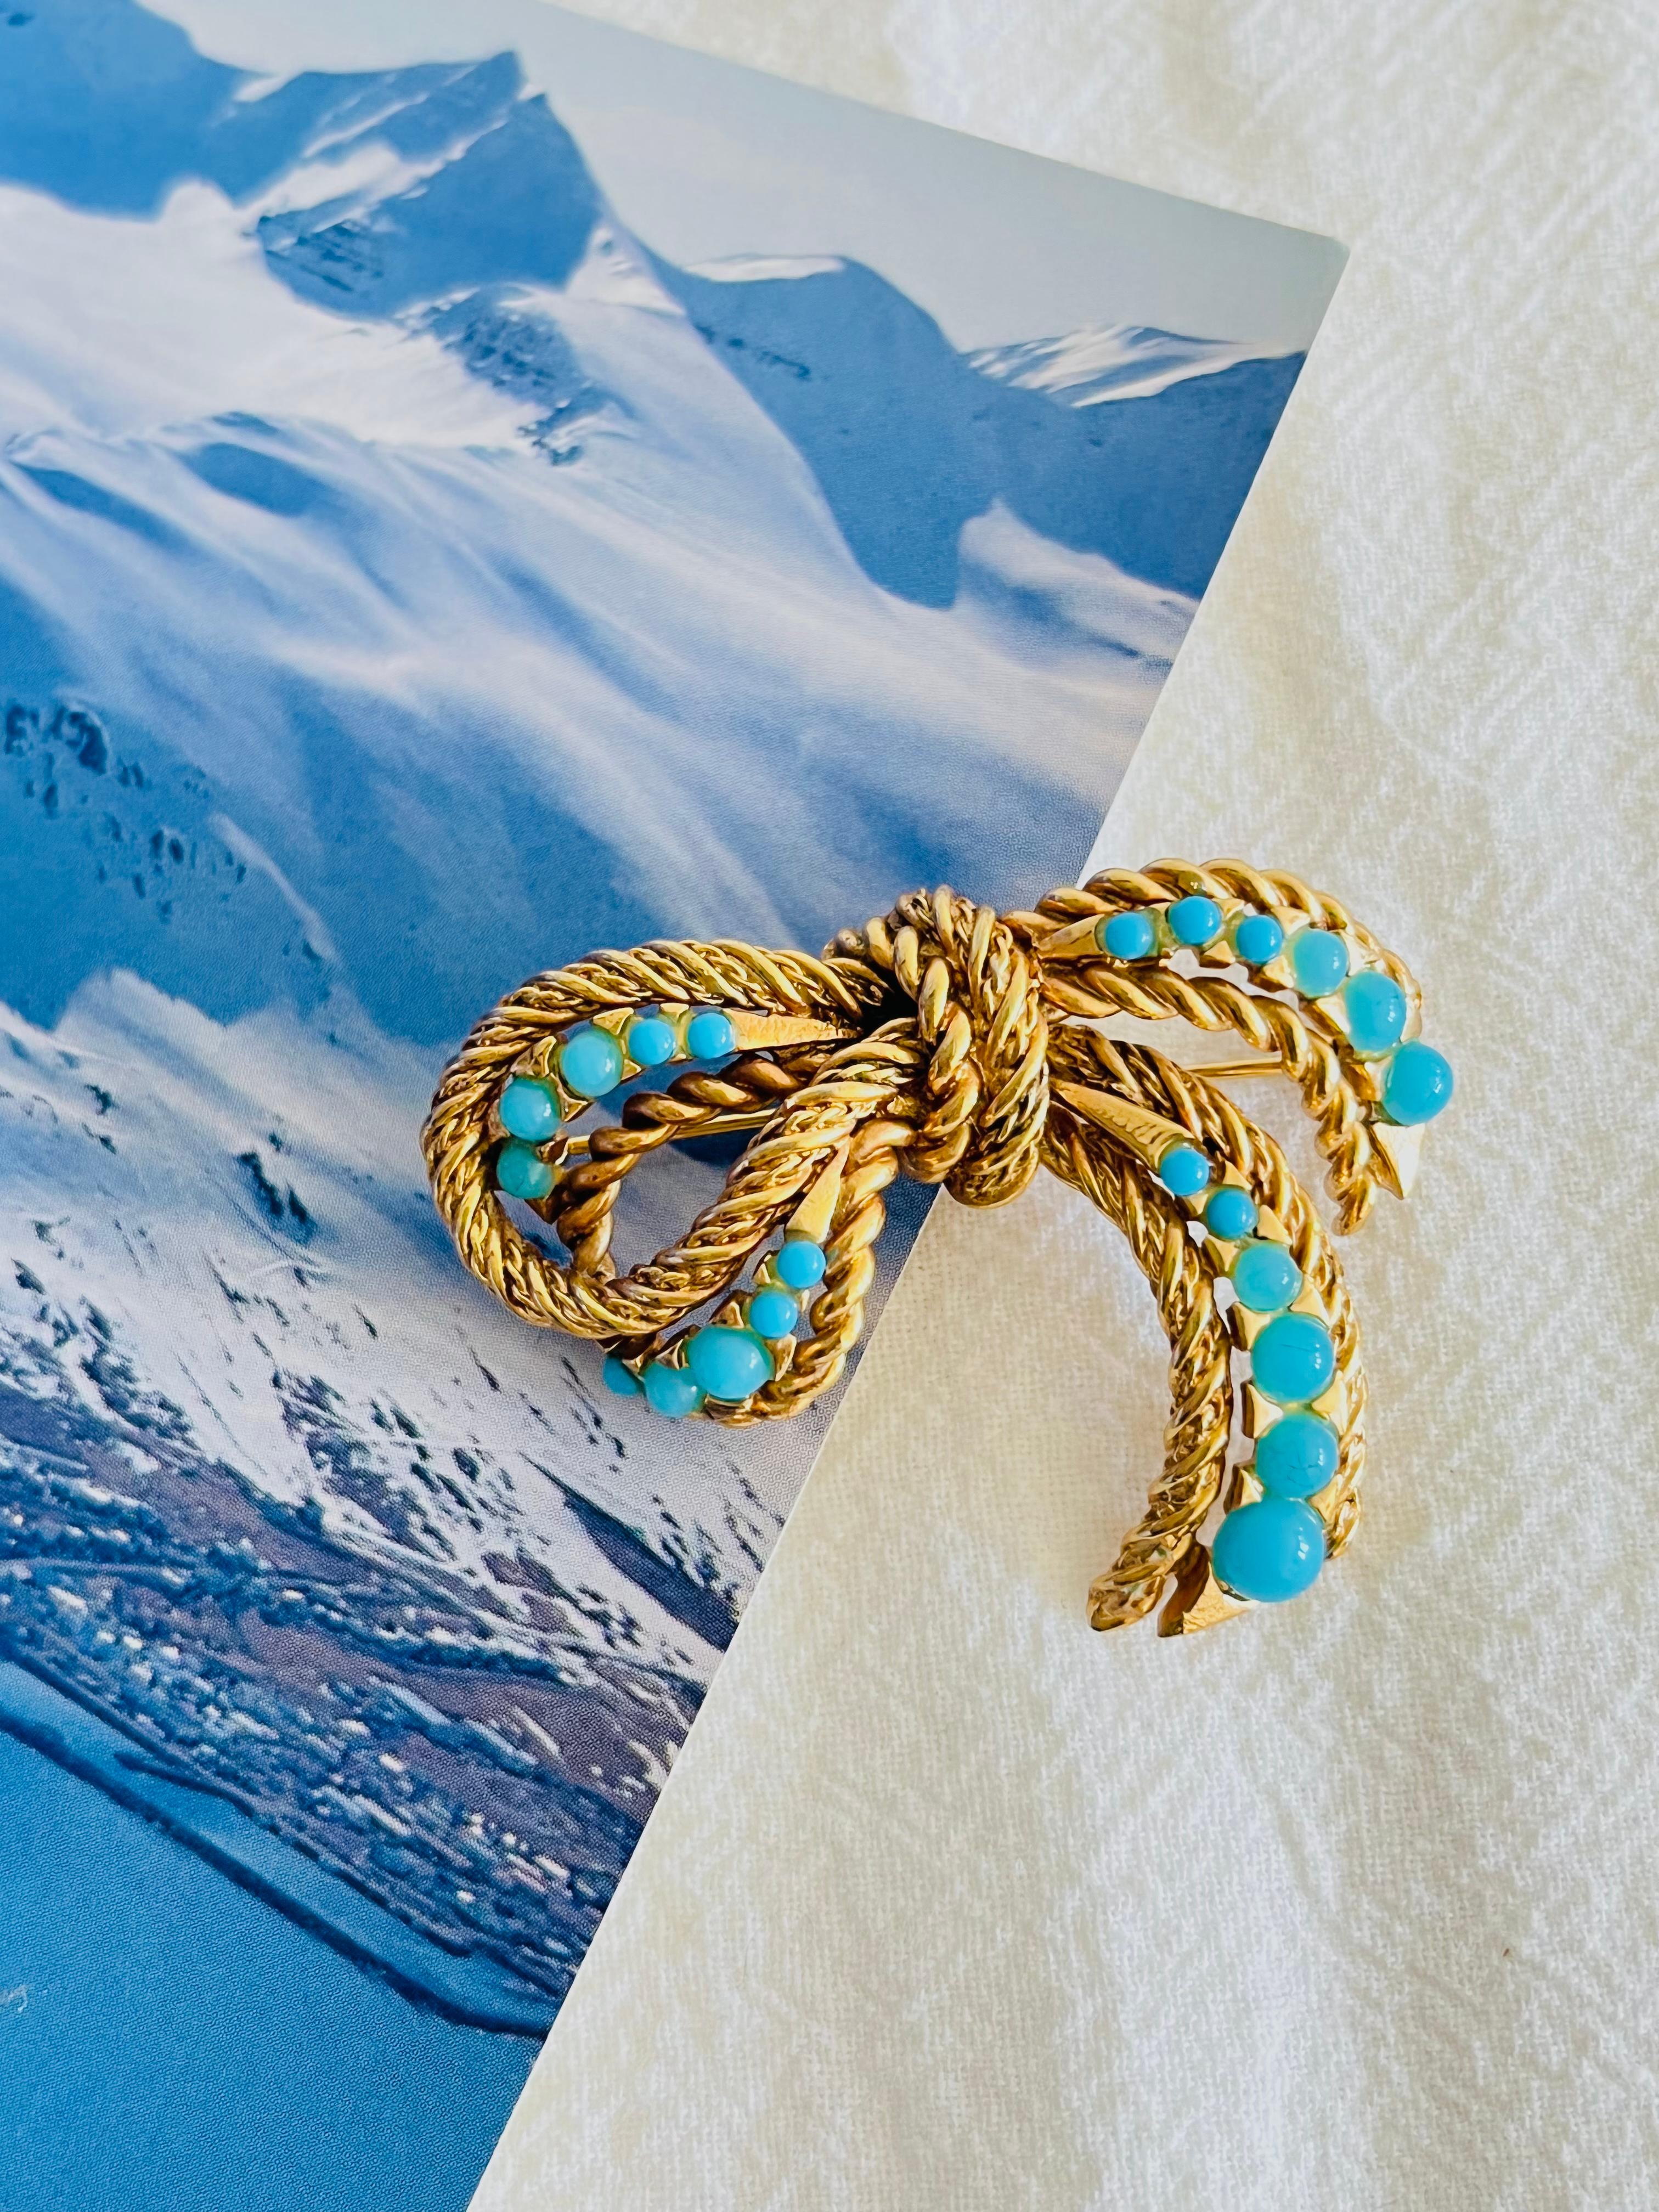 Christian Dior GROSSE 1967 Vintage Blue Dots Knot Bow Ribbon Openwork Brooch, Gold Tone

Très bon état. 100% authentique. Rare à trouver.

Fermeture à goupille de sécurité. Signé Grosse 1967 au dos.

Taille : 4,8 cm x 3,7 cm.

Poids : 16,0 g.

_ _